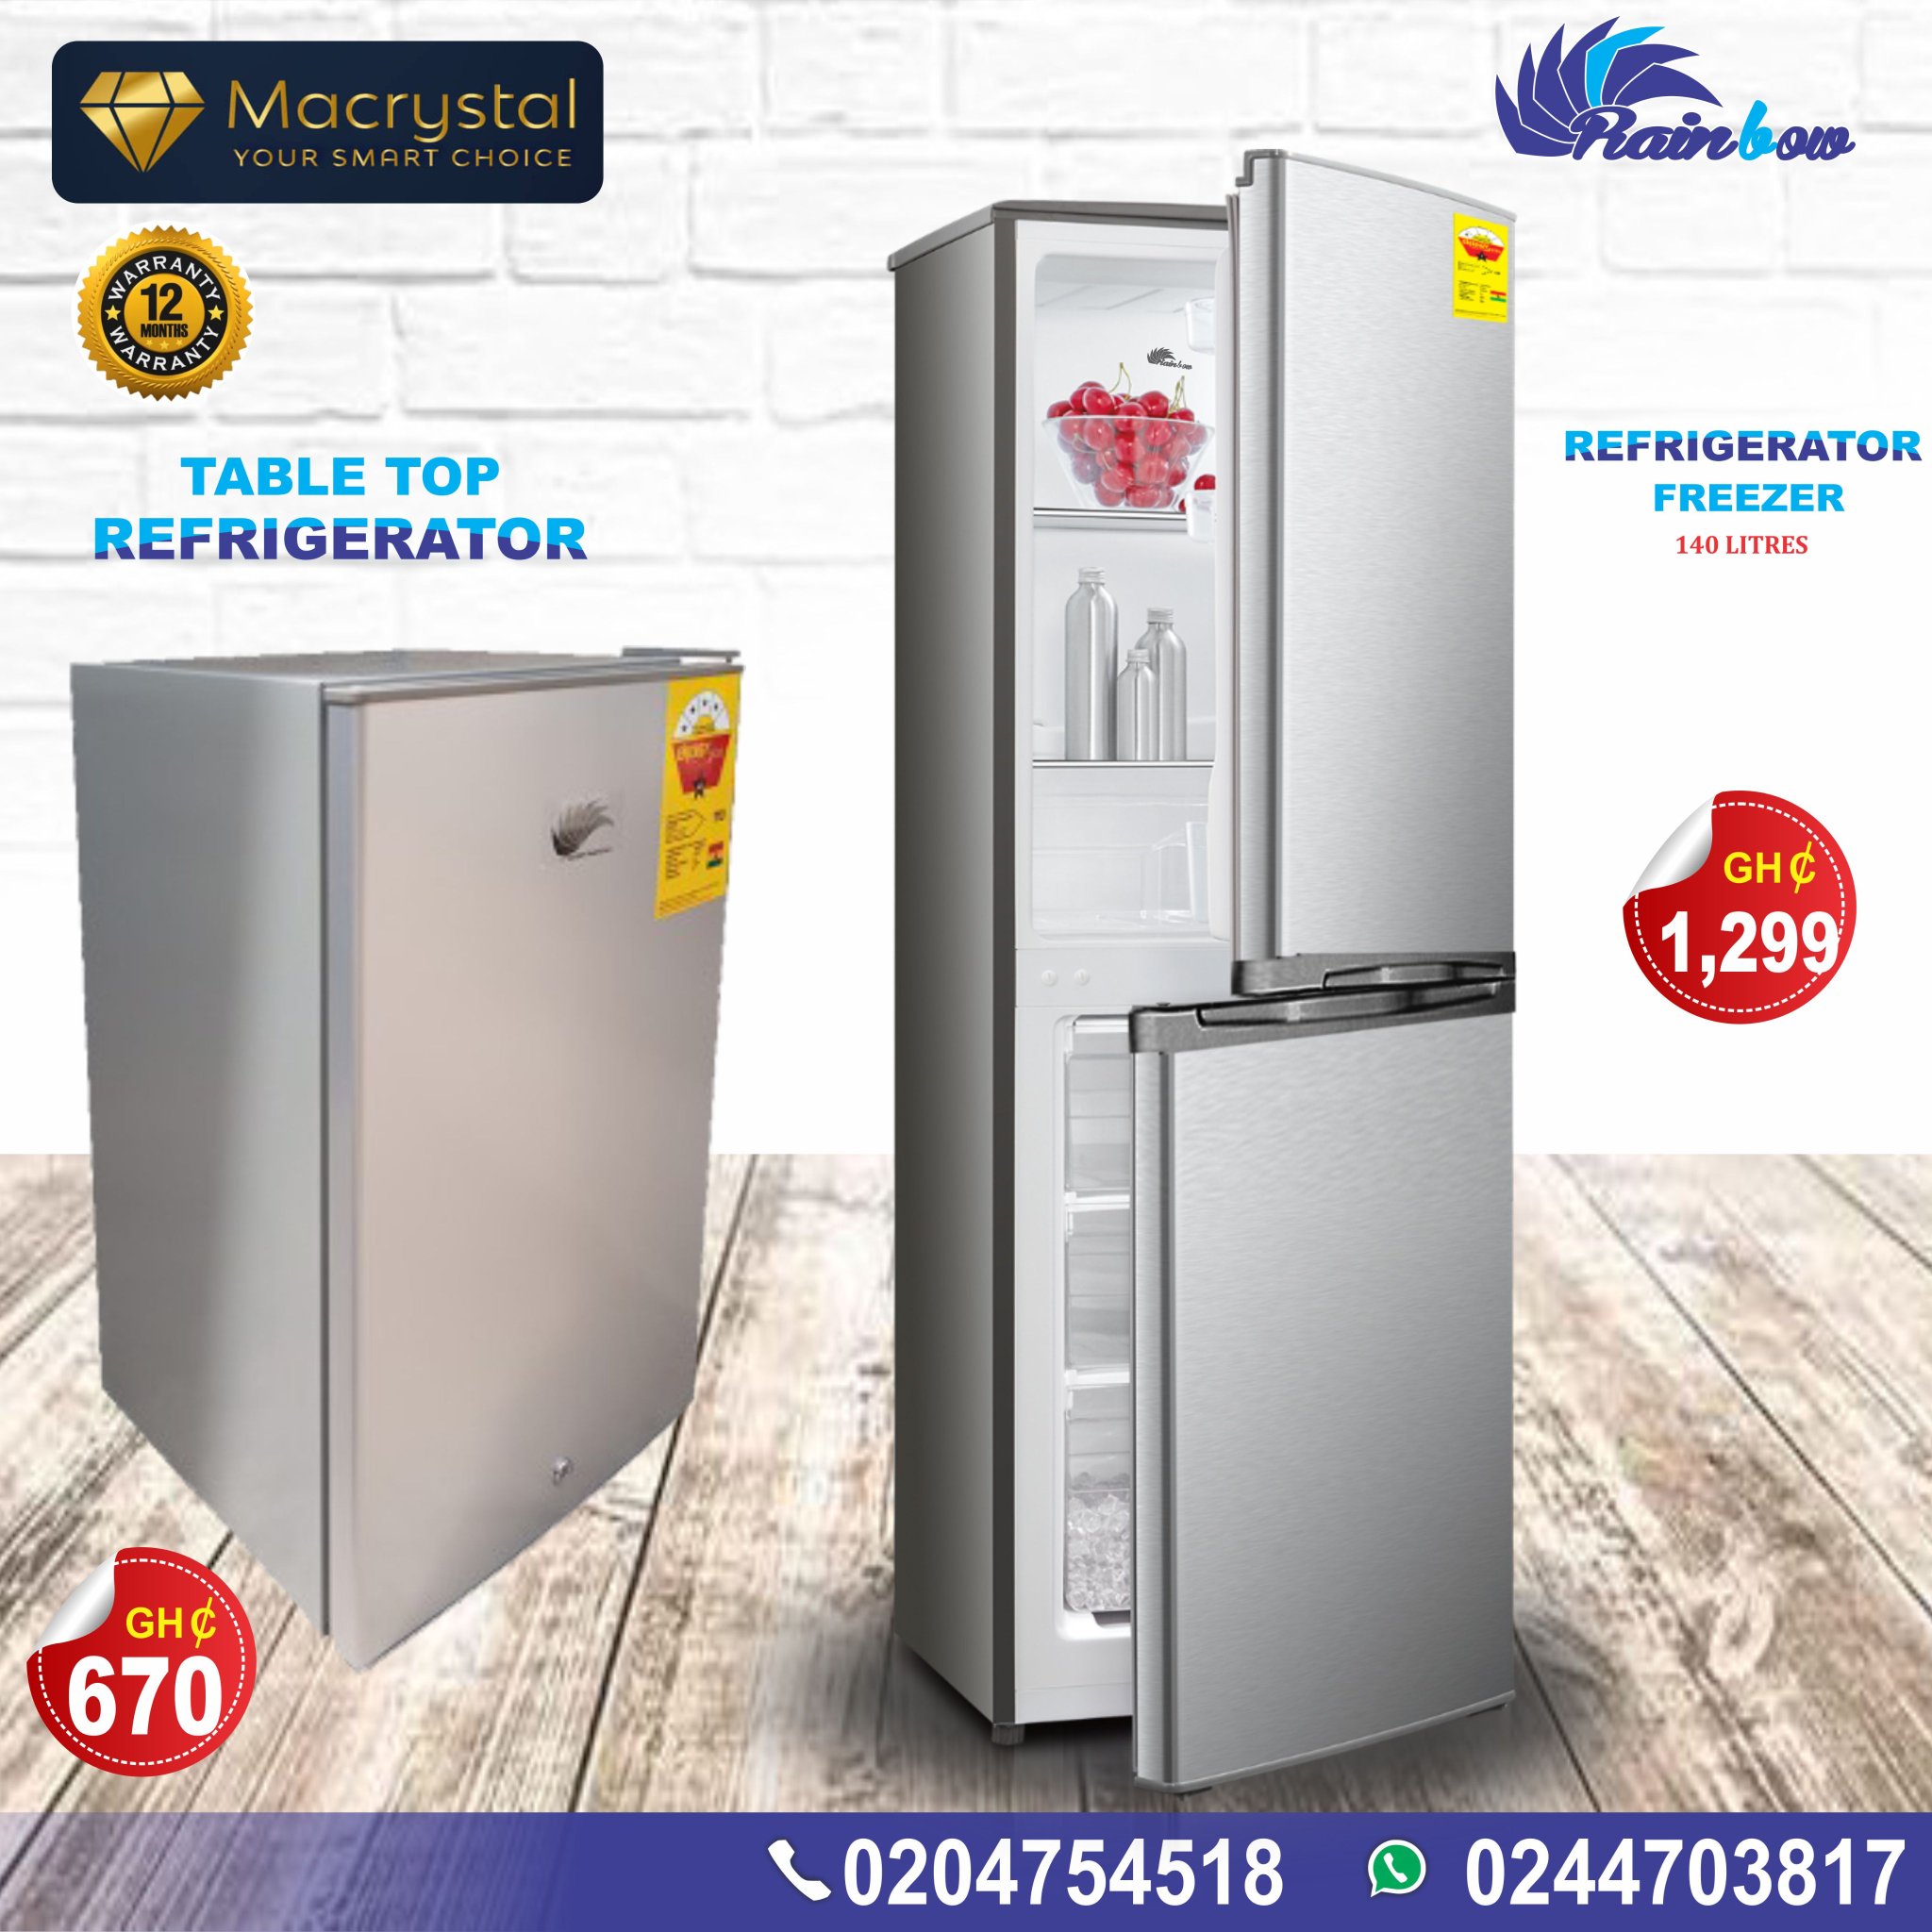 37++ Best fridge brand in ghana ideas in 2021 